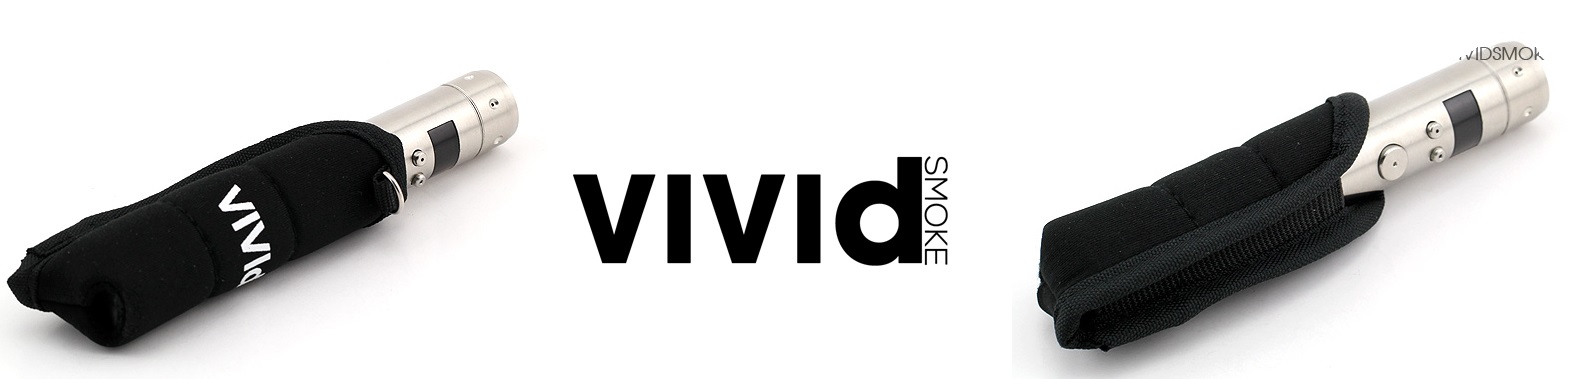 vivid-smoke-brand-logo